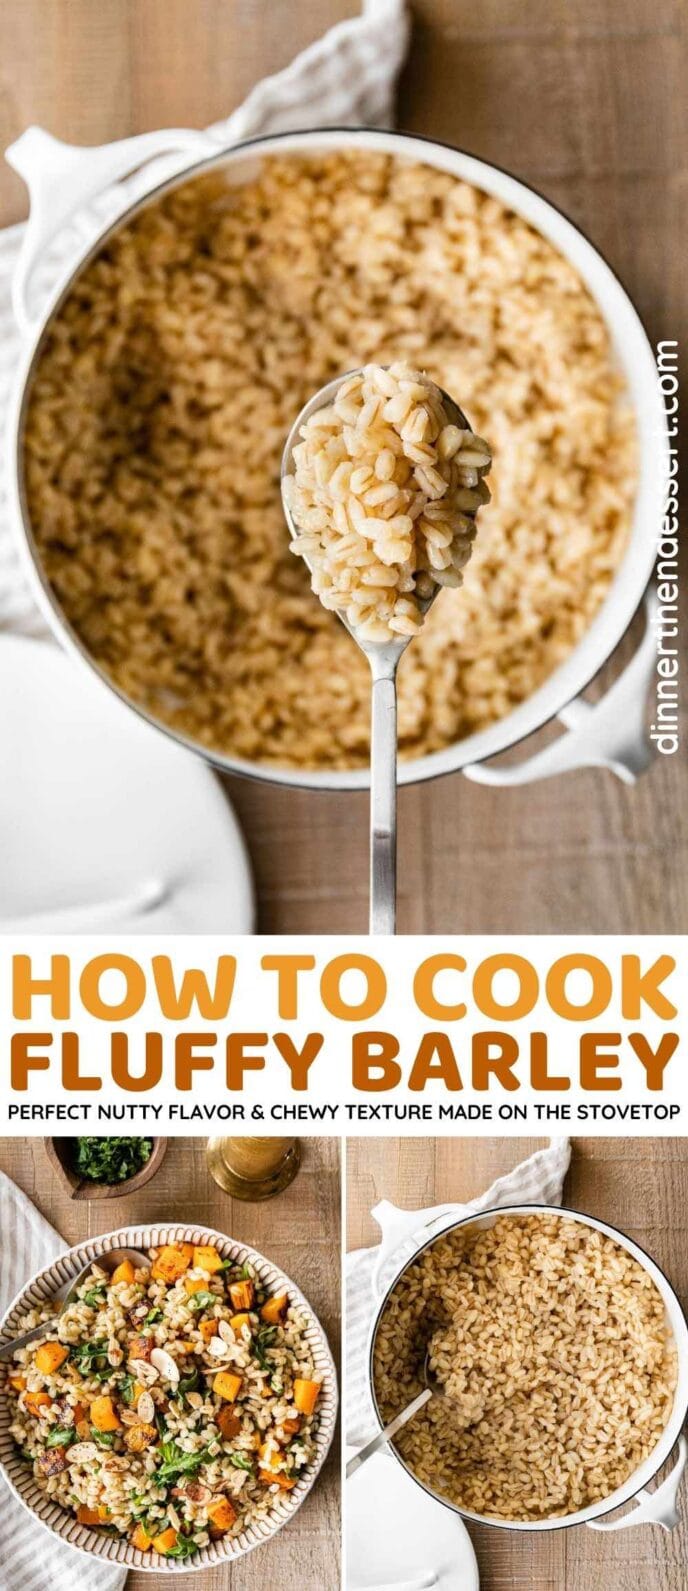 Fluffy Barley